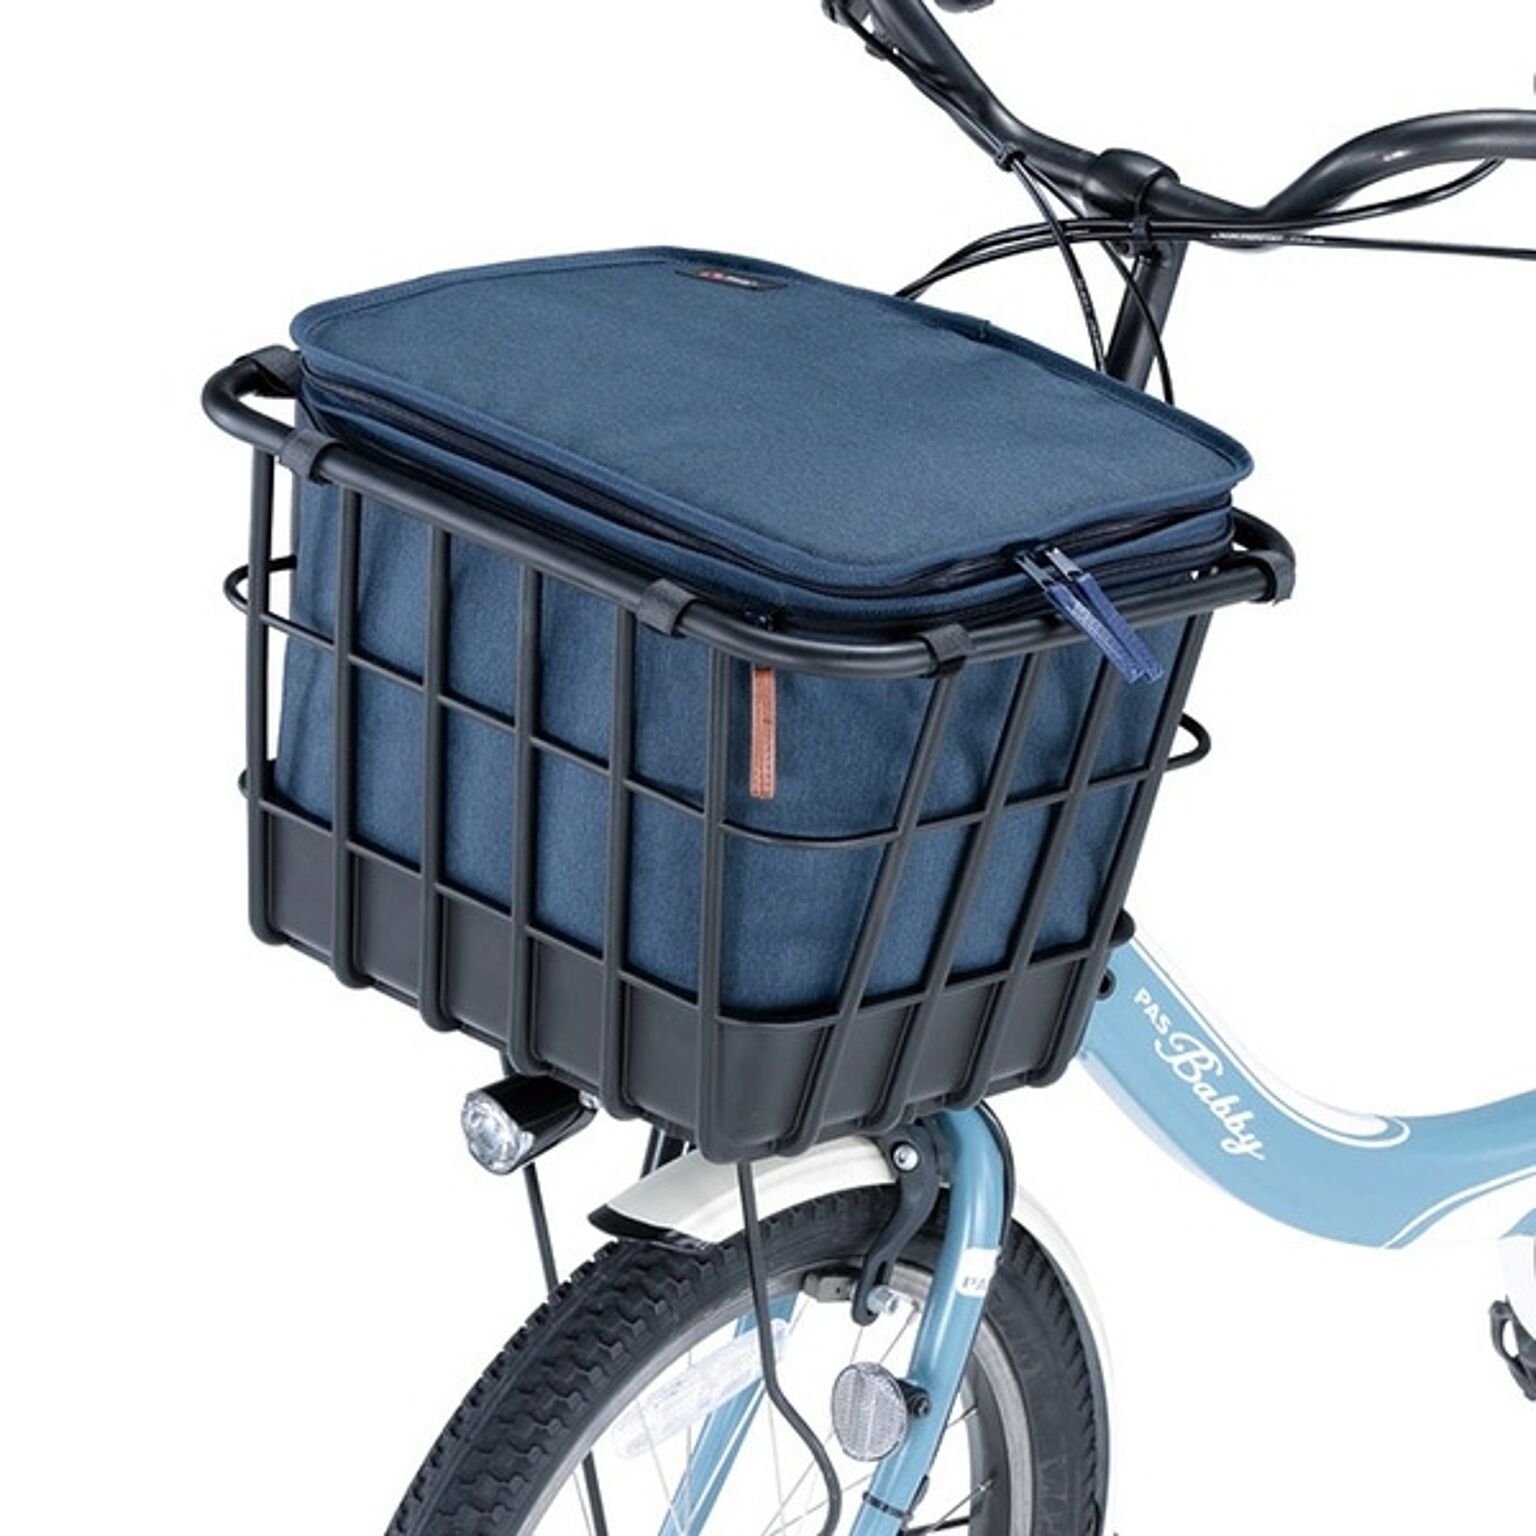 自転車用 かごカバー 約幅36cm フロントタイプ ネイビー 撥水加工 プレミアム 2段式 インナーカバー 雨対策 防犯対策用品